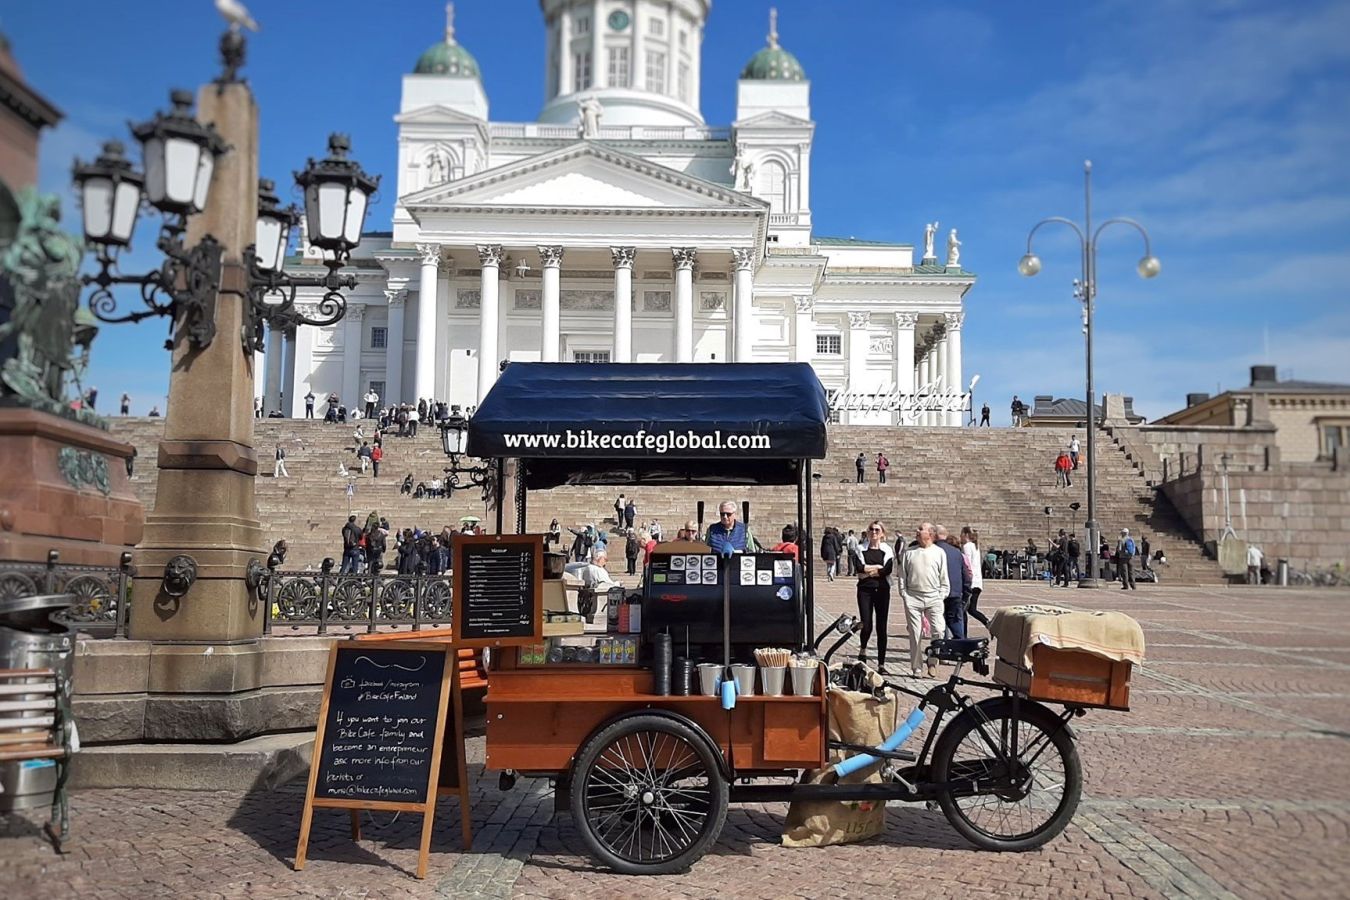 rowerowa kawiarnia Bike Café pomysł na biznes